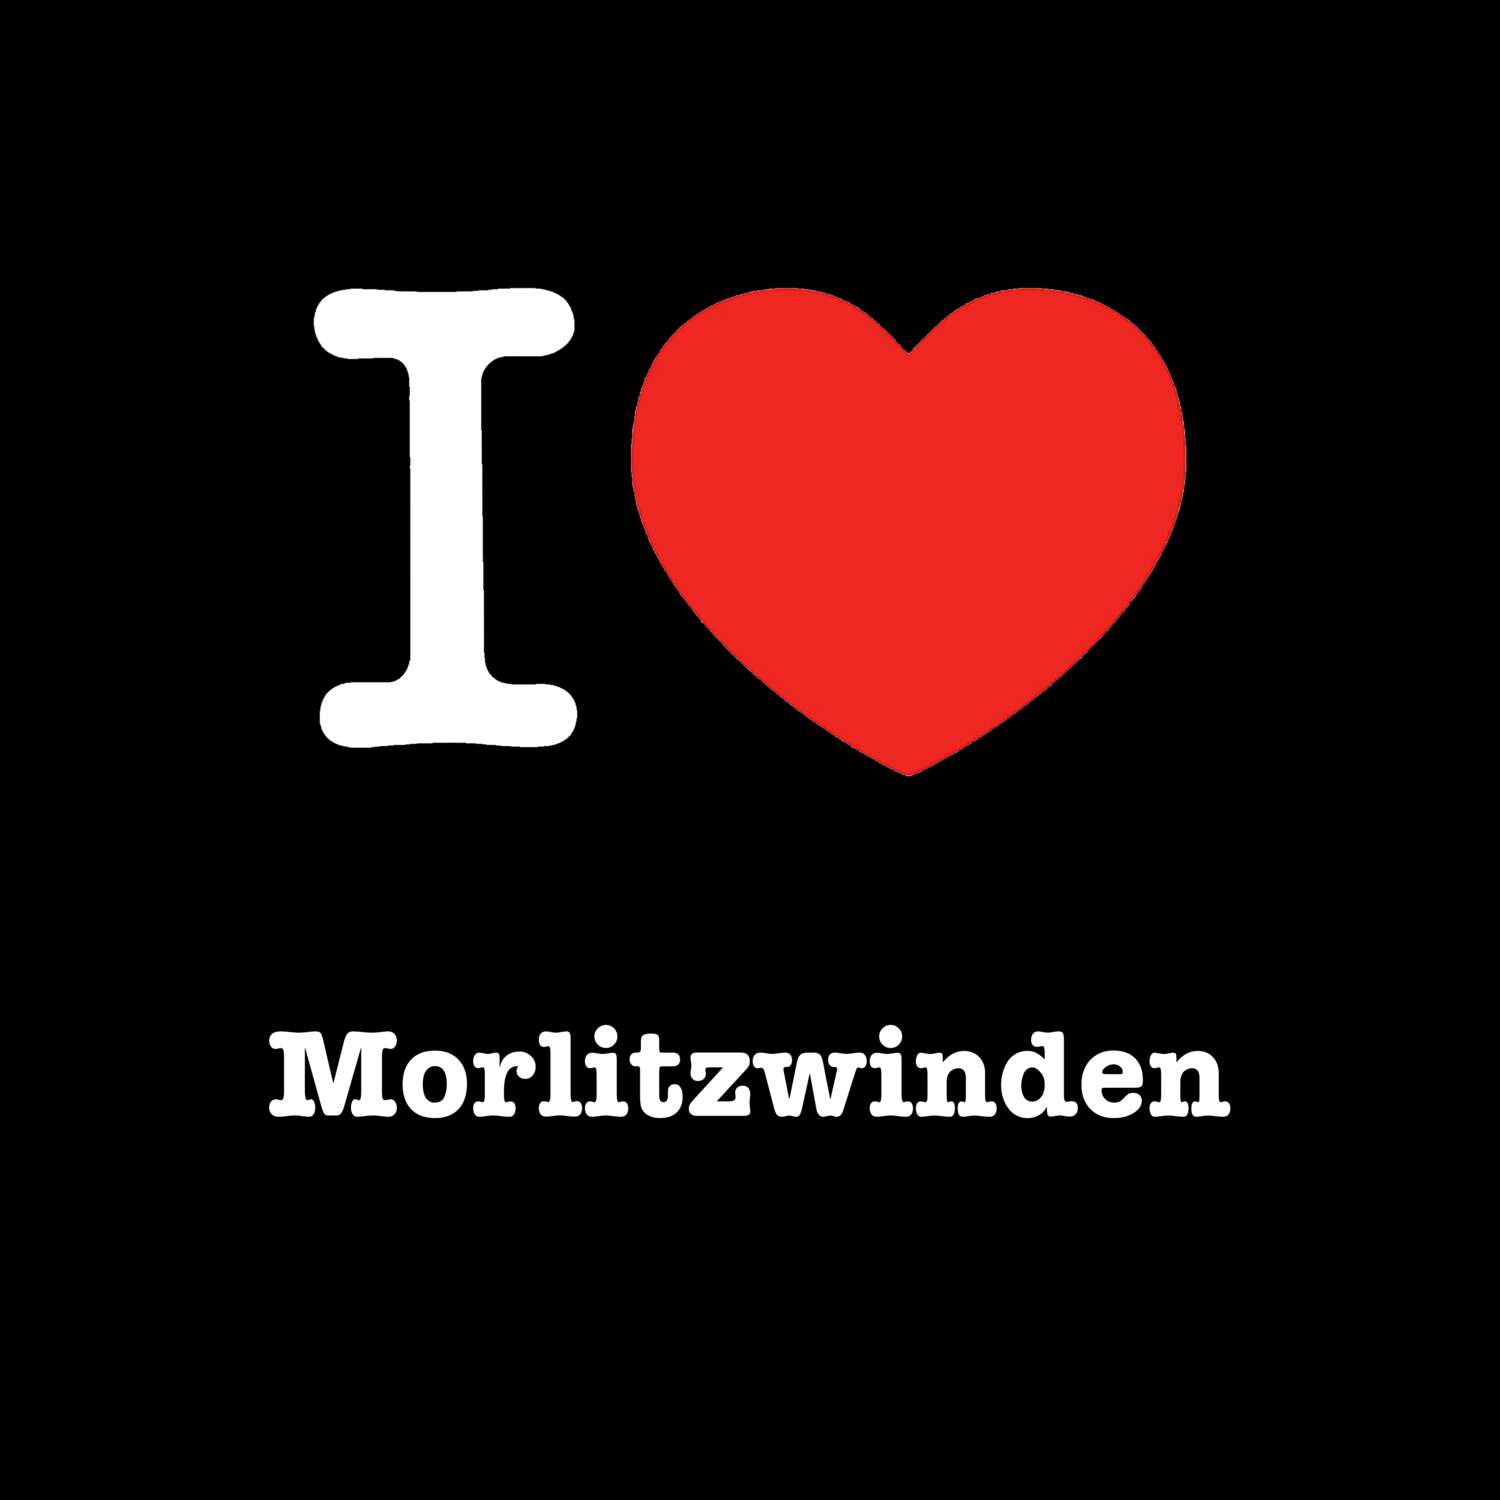 Morlitzwinden T-Shirt »I love«